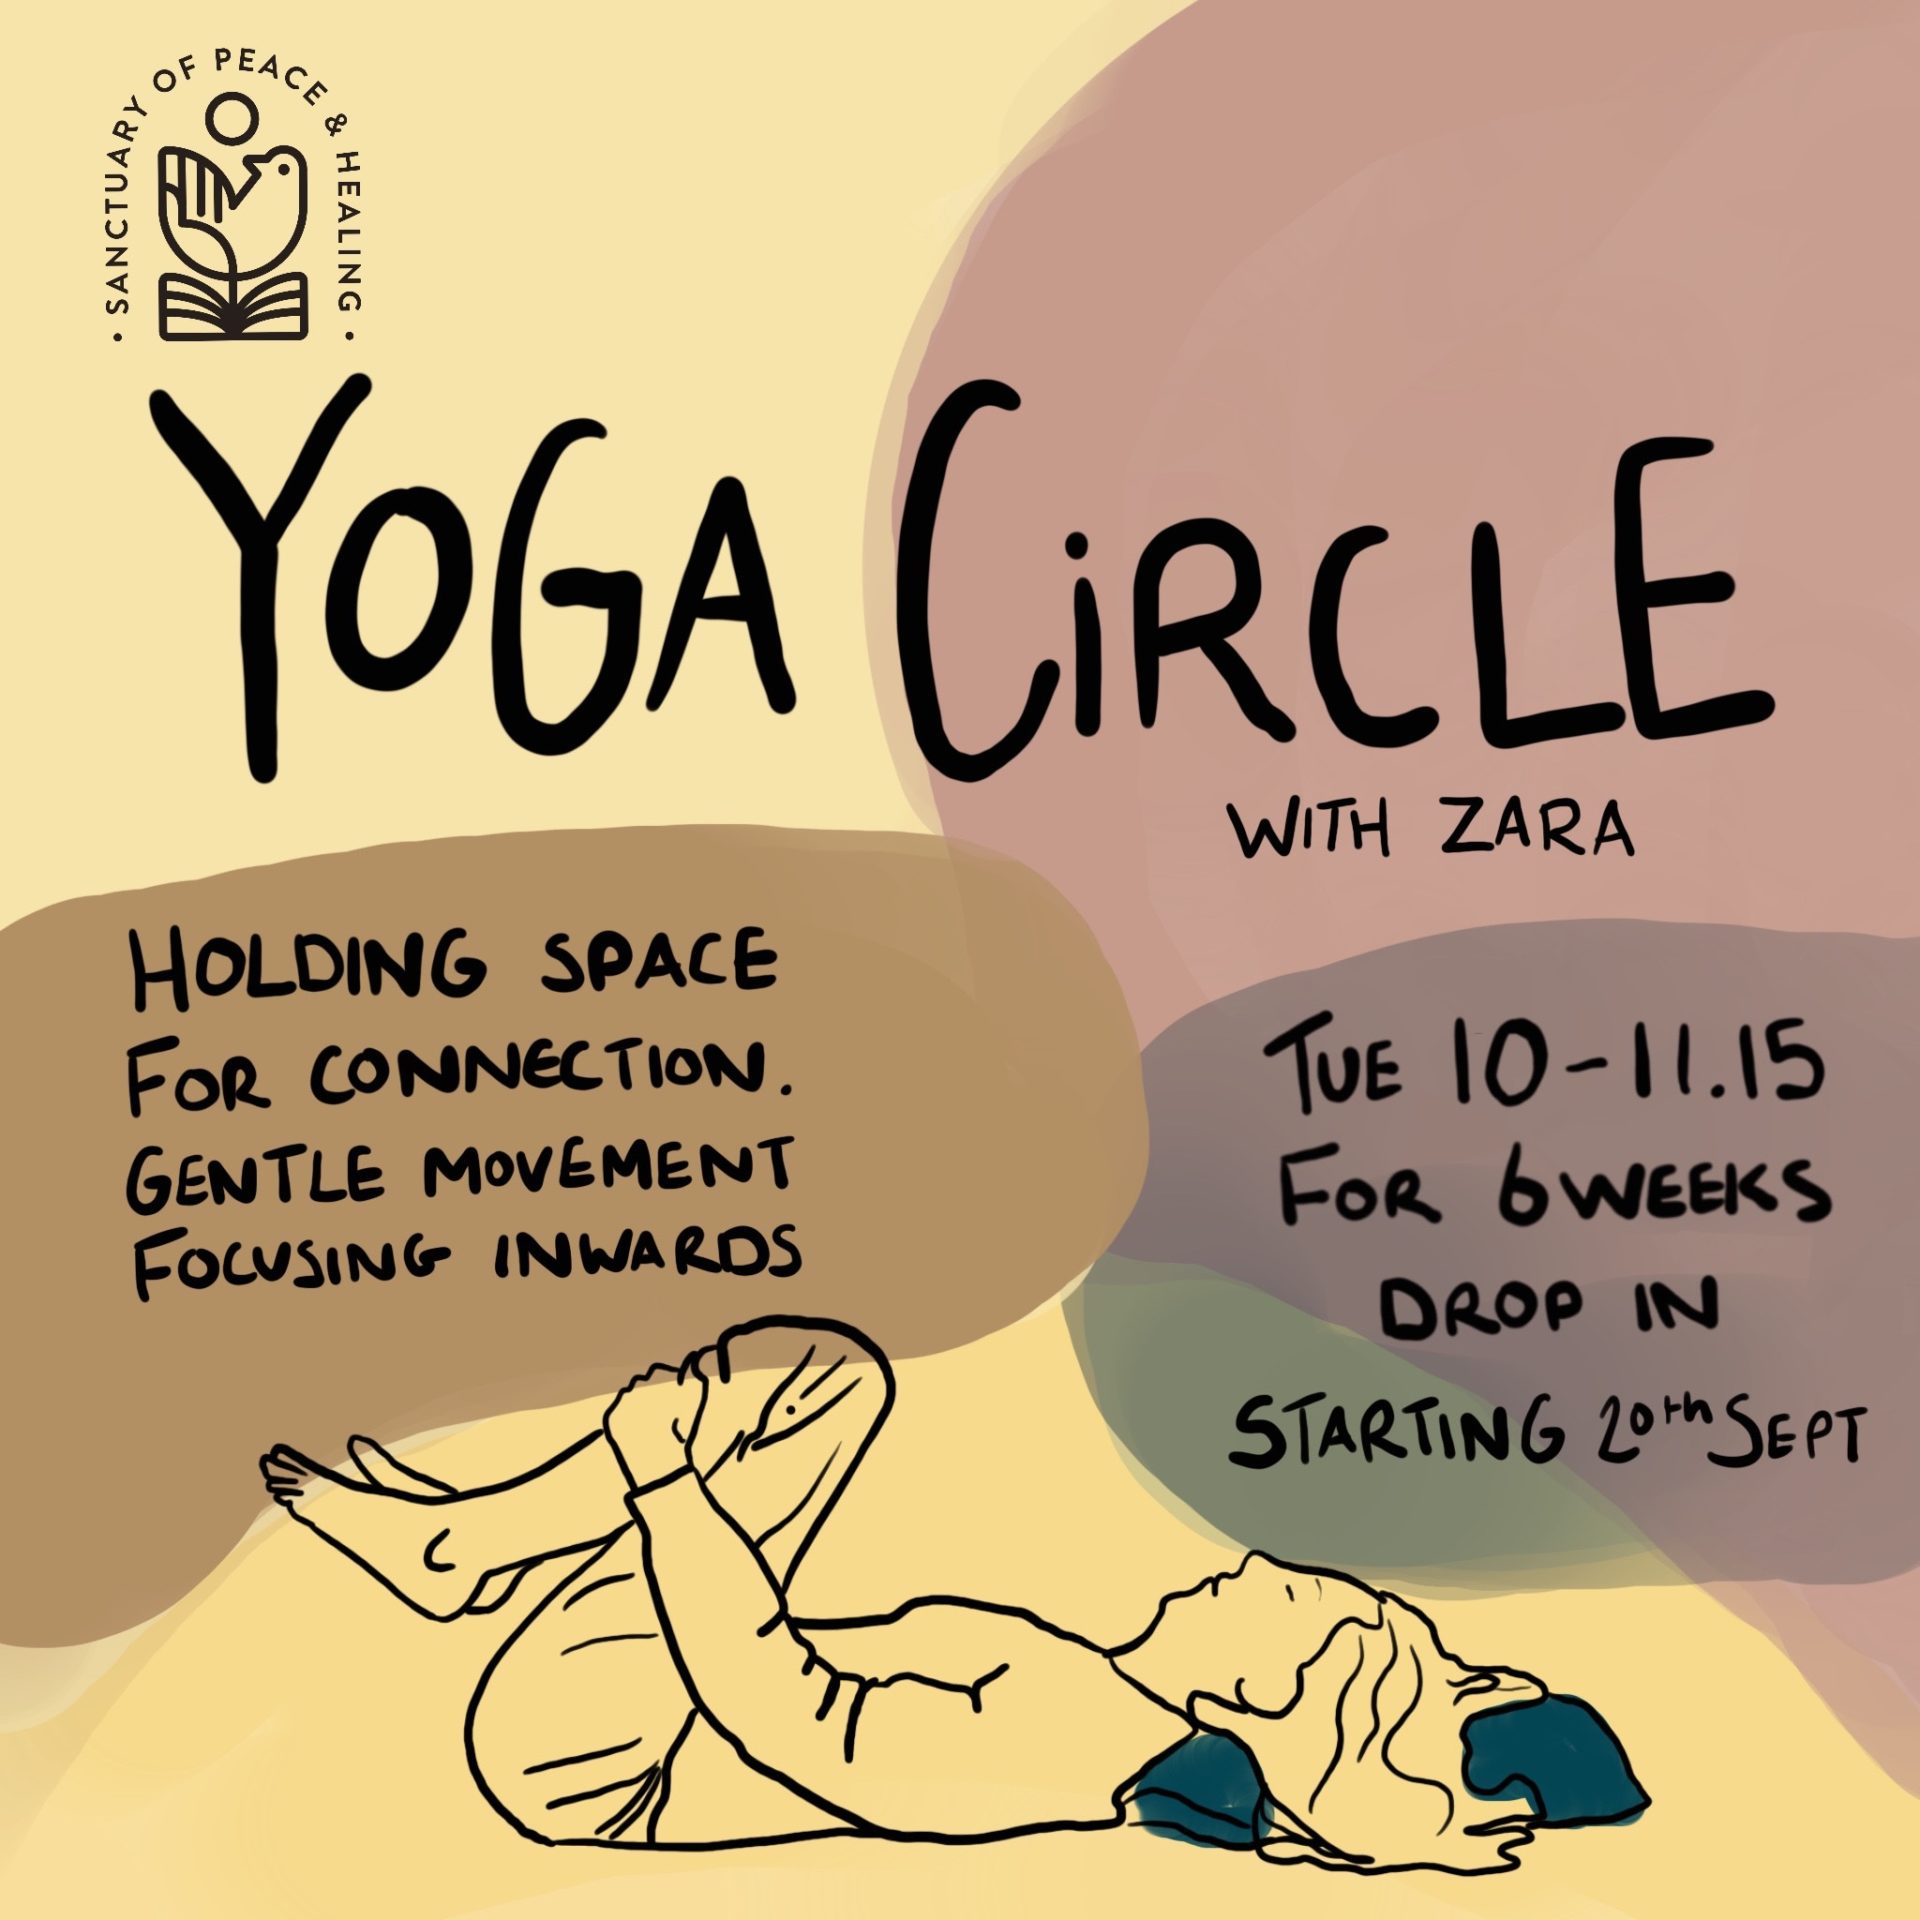 Yoga circle at Manchester Monastery